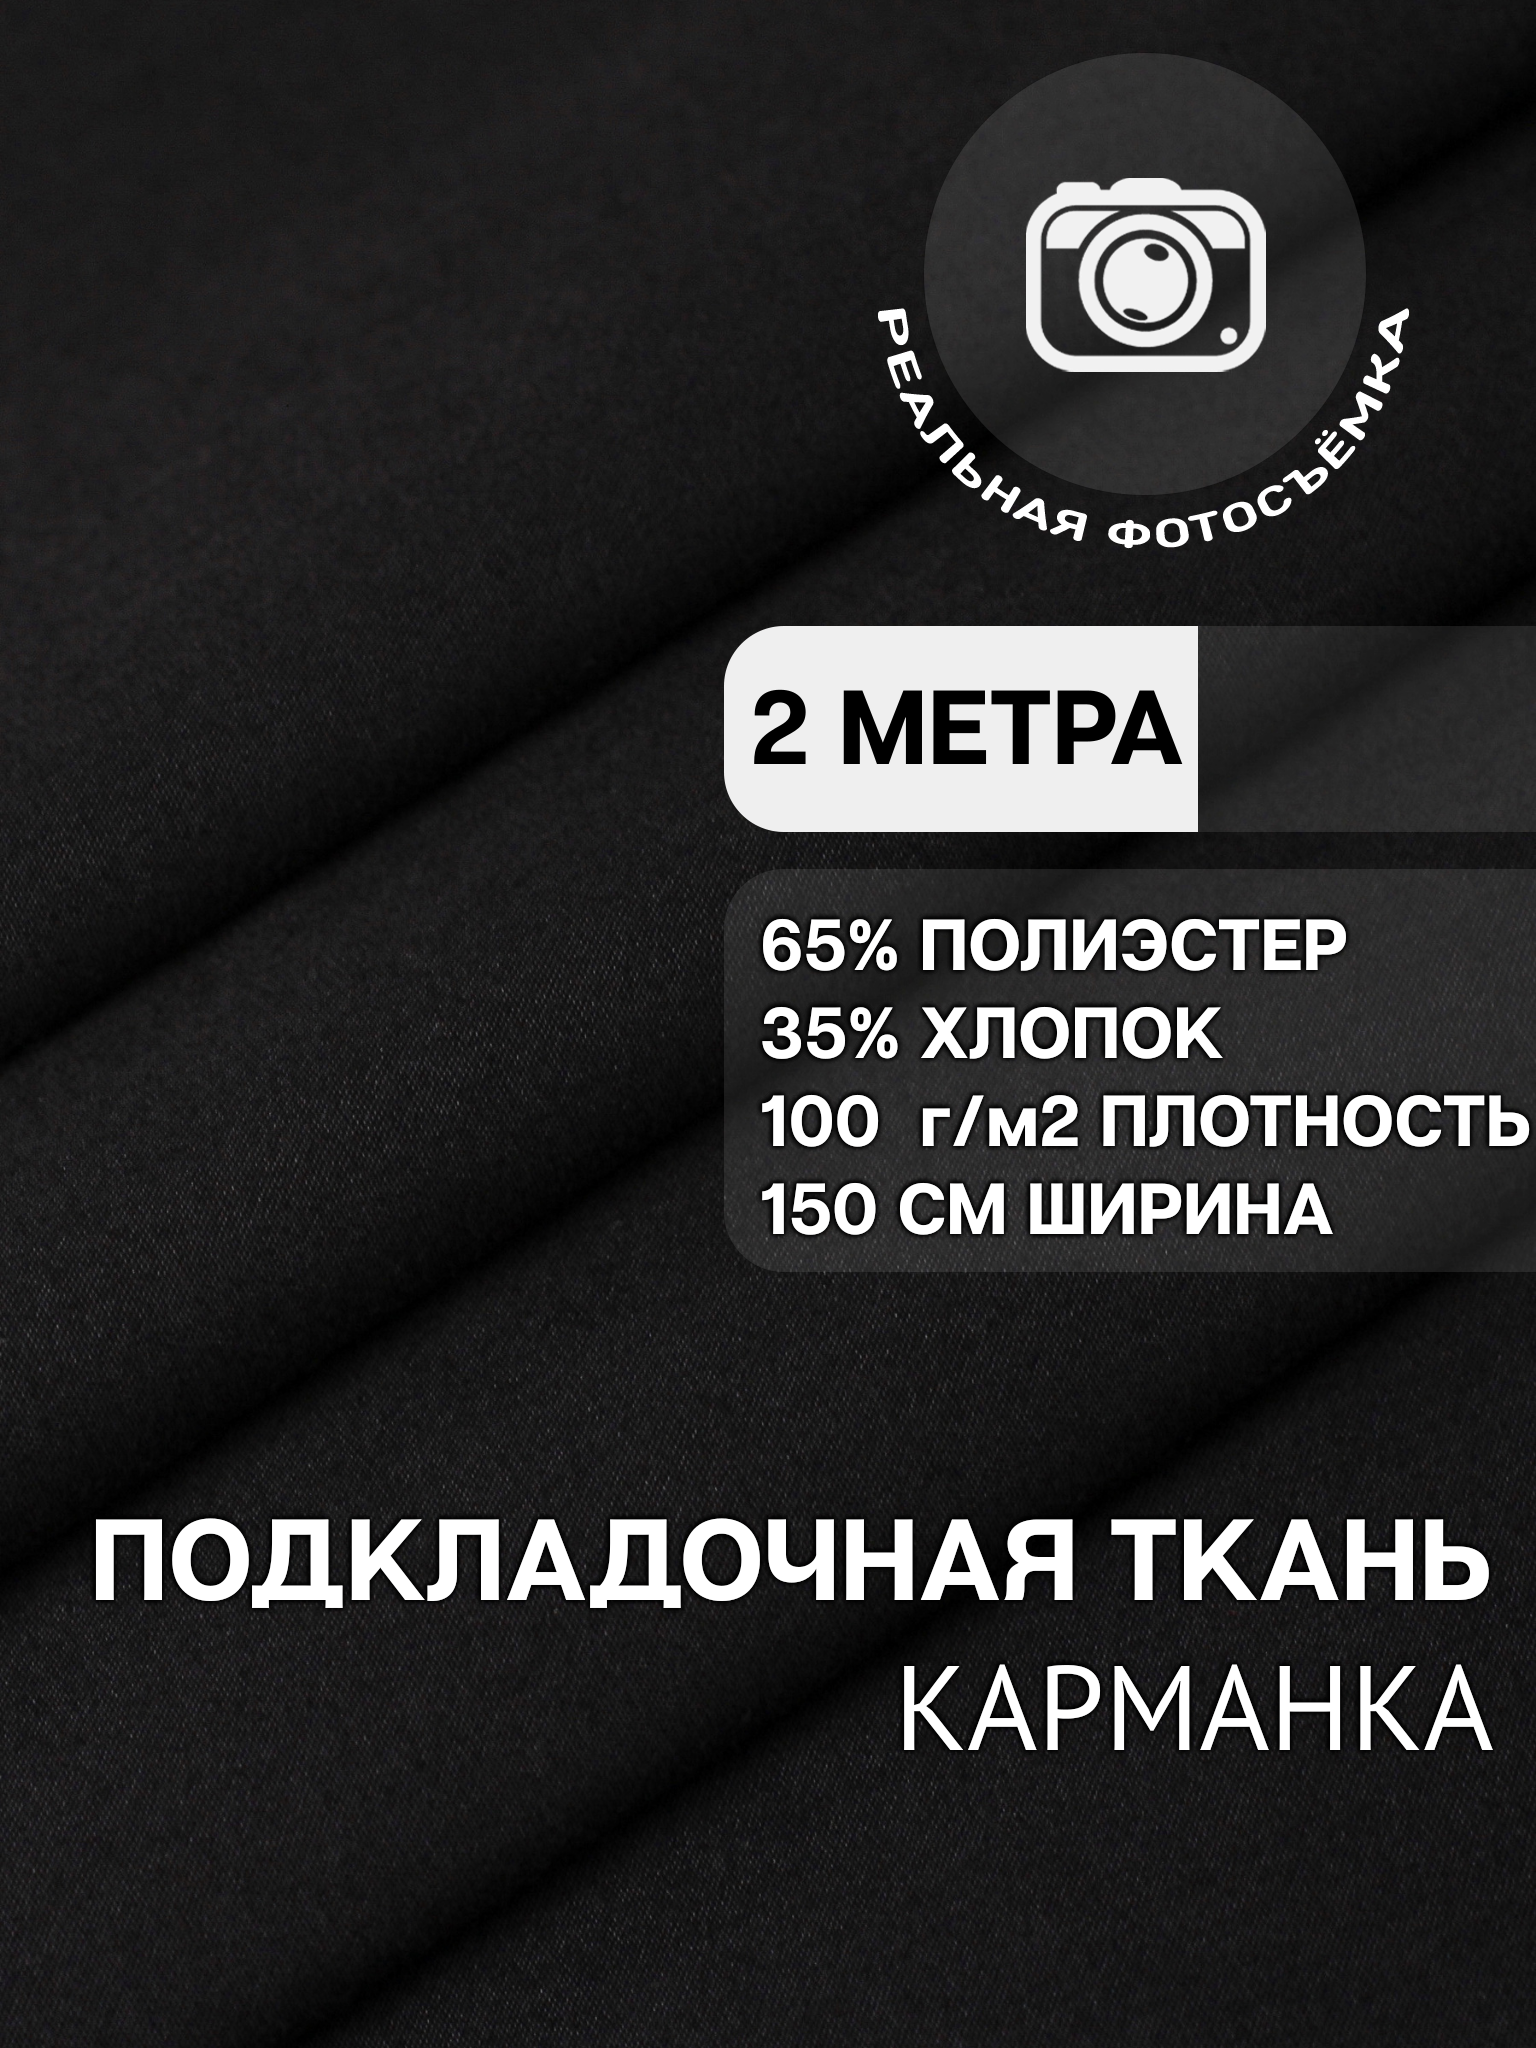 Ткань карманная подкладочная черная для шитья, однотонная MDC FABRICS KX100/4 для одежды. Хлопок 35%. Отрез 2 метра